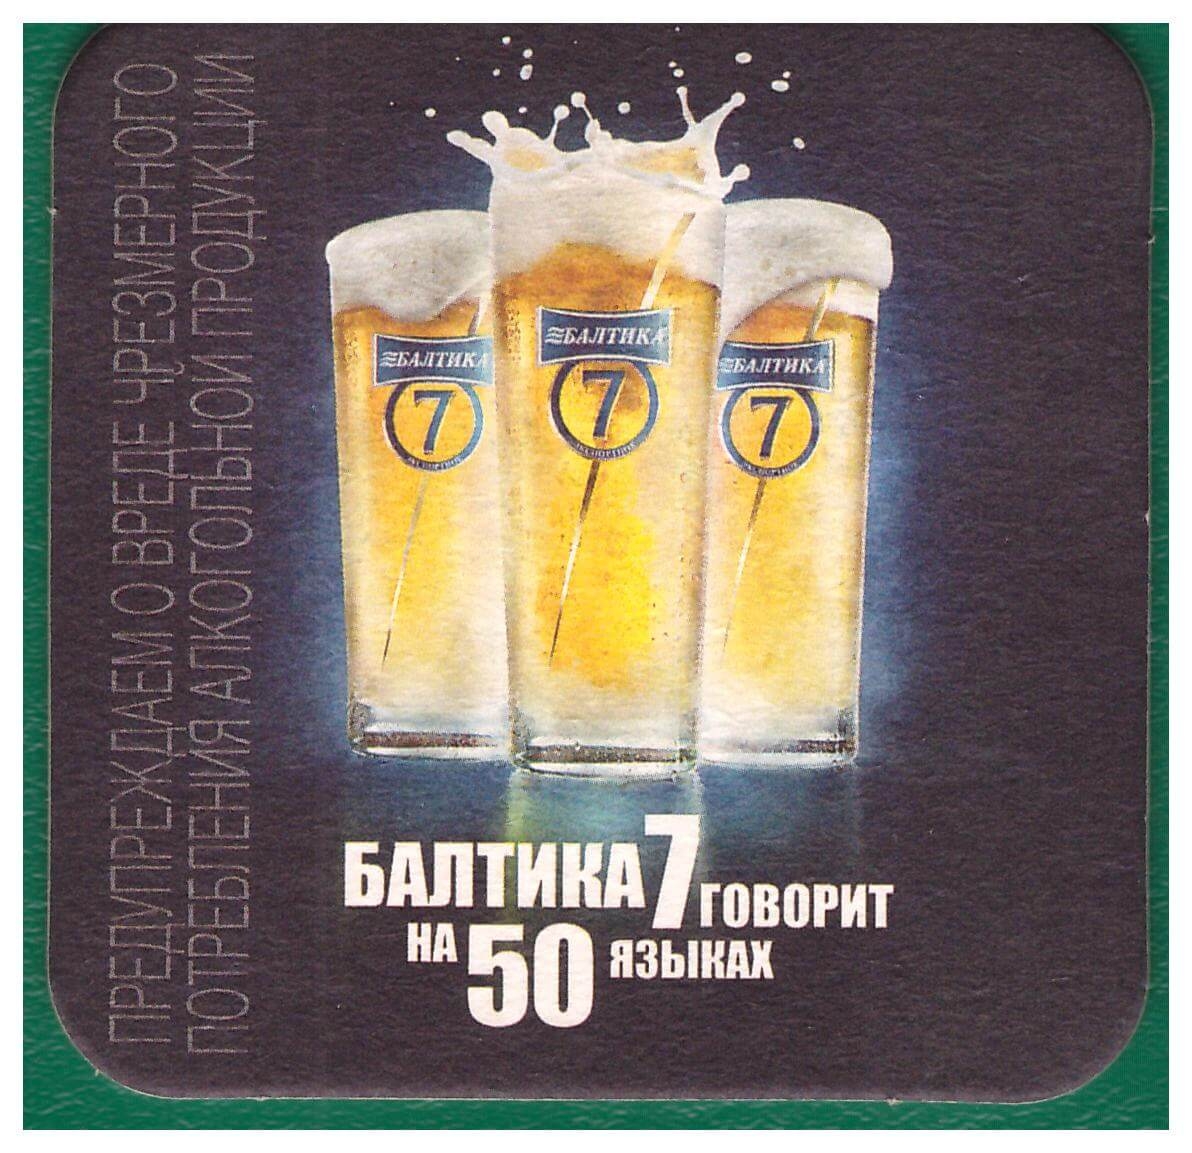 Бирдекель. Пиво. Балтика, №7(Россия). Тип 2